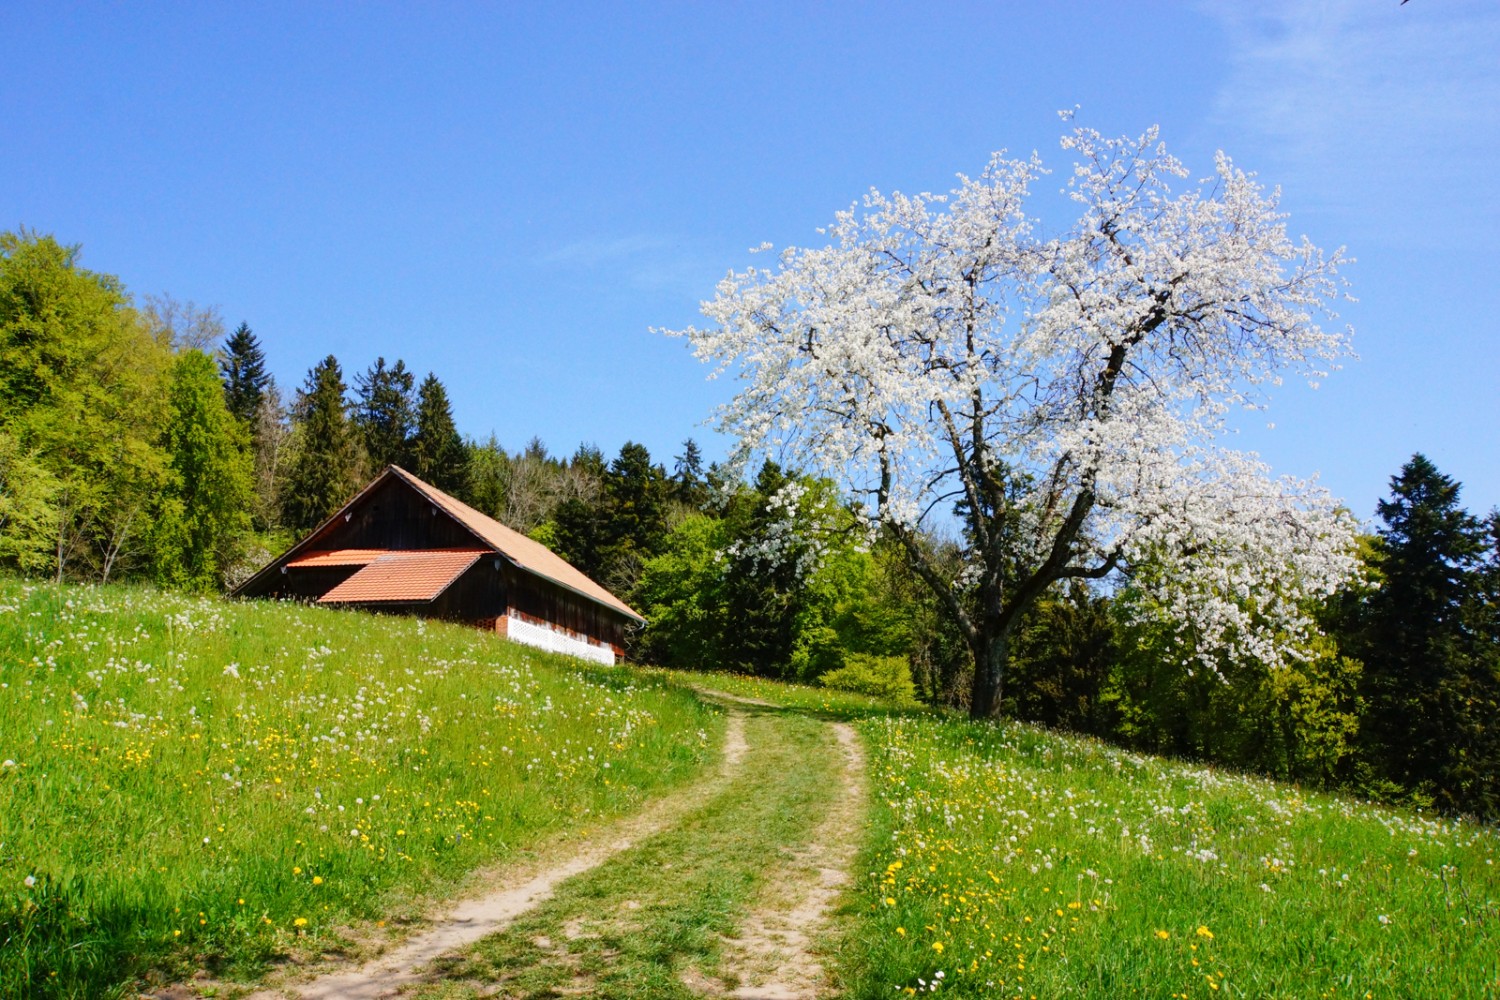 Etwas oberhalb von Udligenswil trifft man auf blühende Obstbäume und saftige Wiesen. 